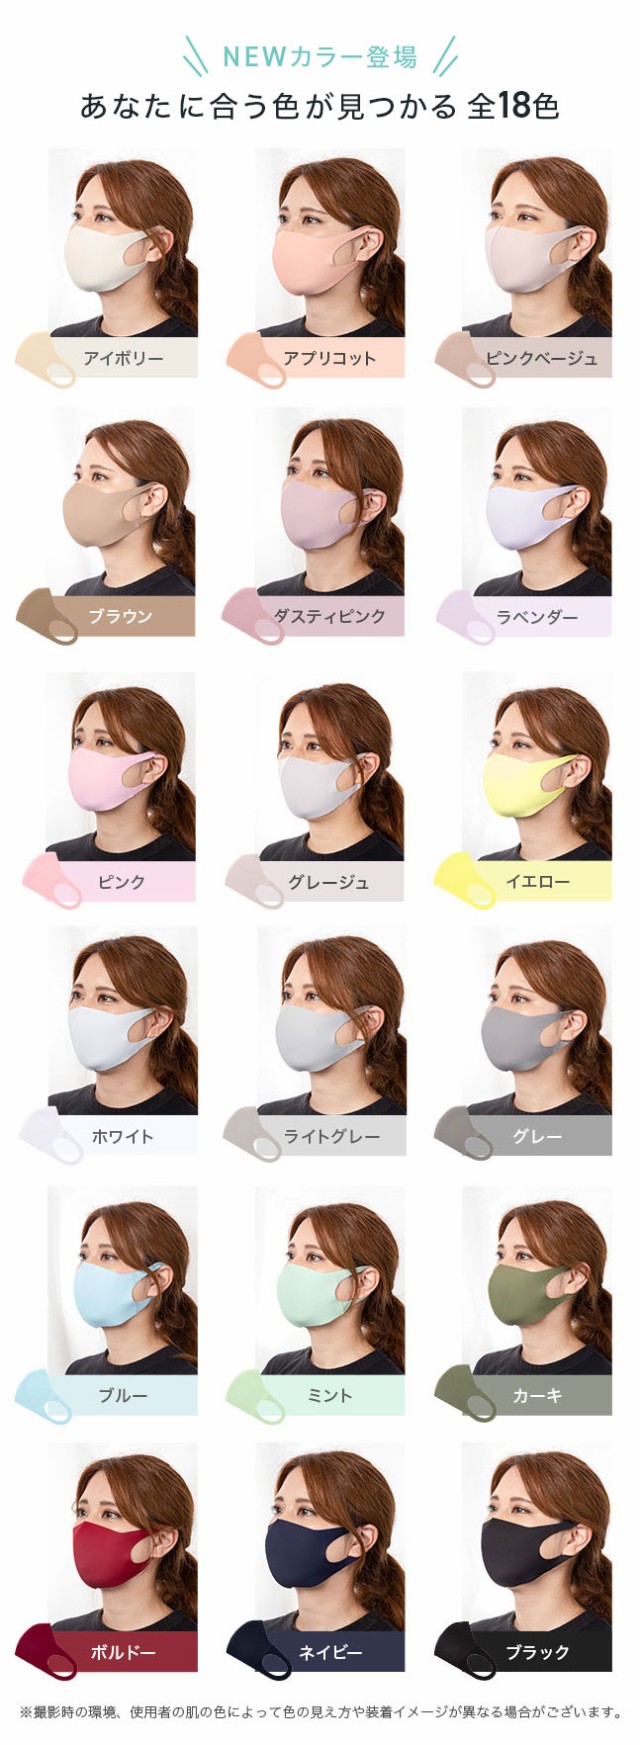 冷感マスク,マスク,冷感,夏用マスク,夏マスク,接触冷感,洗える,マスク,洗える,大人,子供,子供用,涼しい,ひんやり